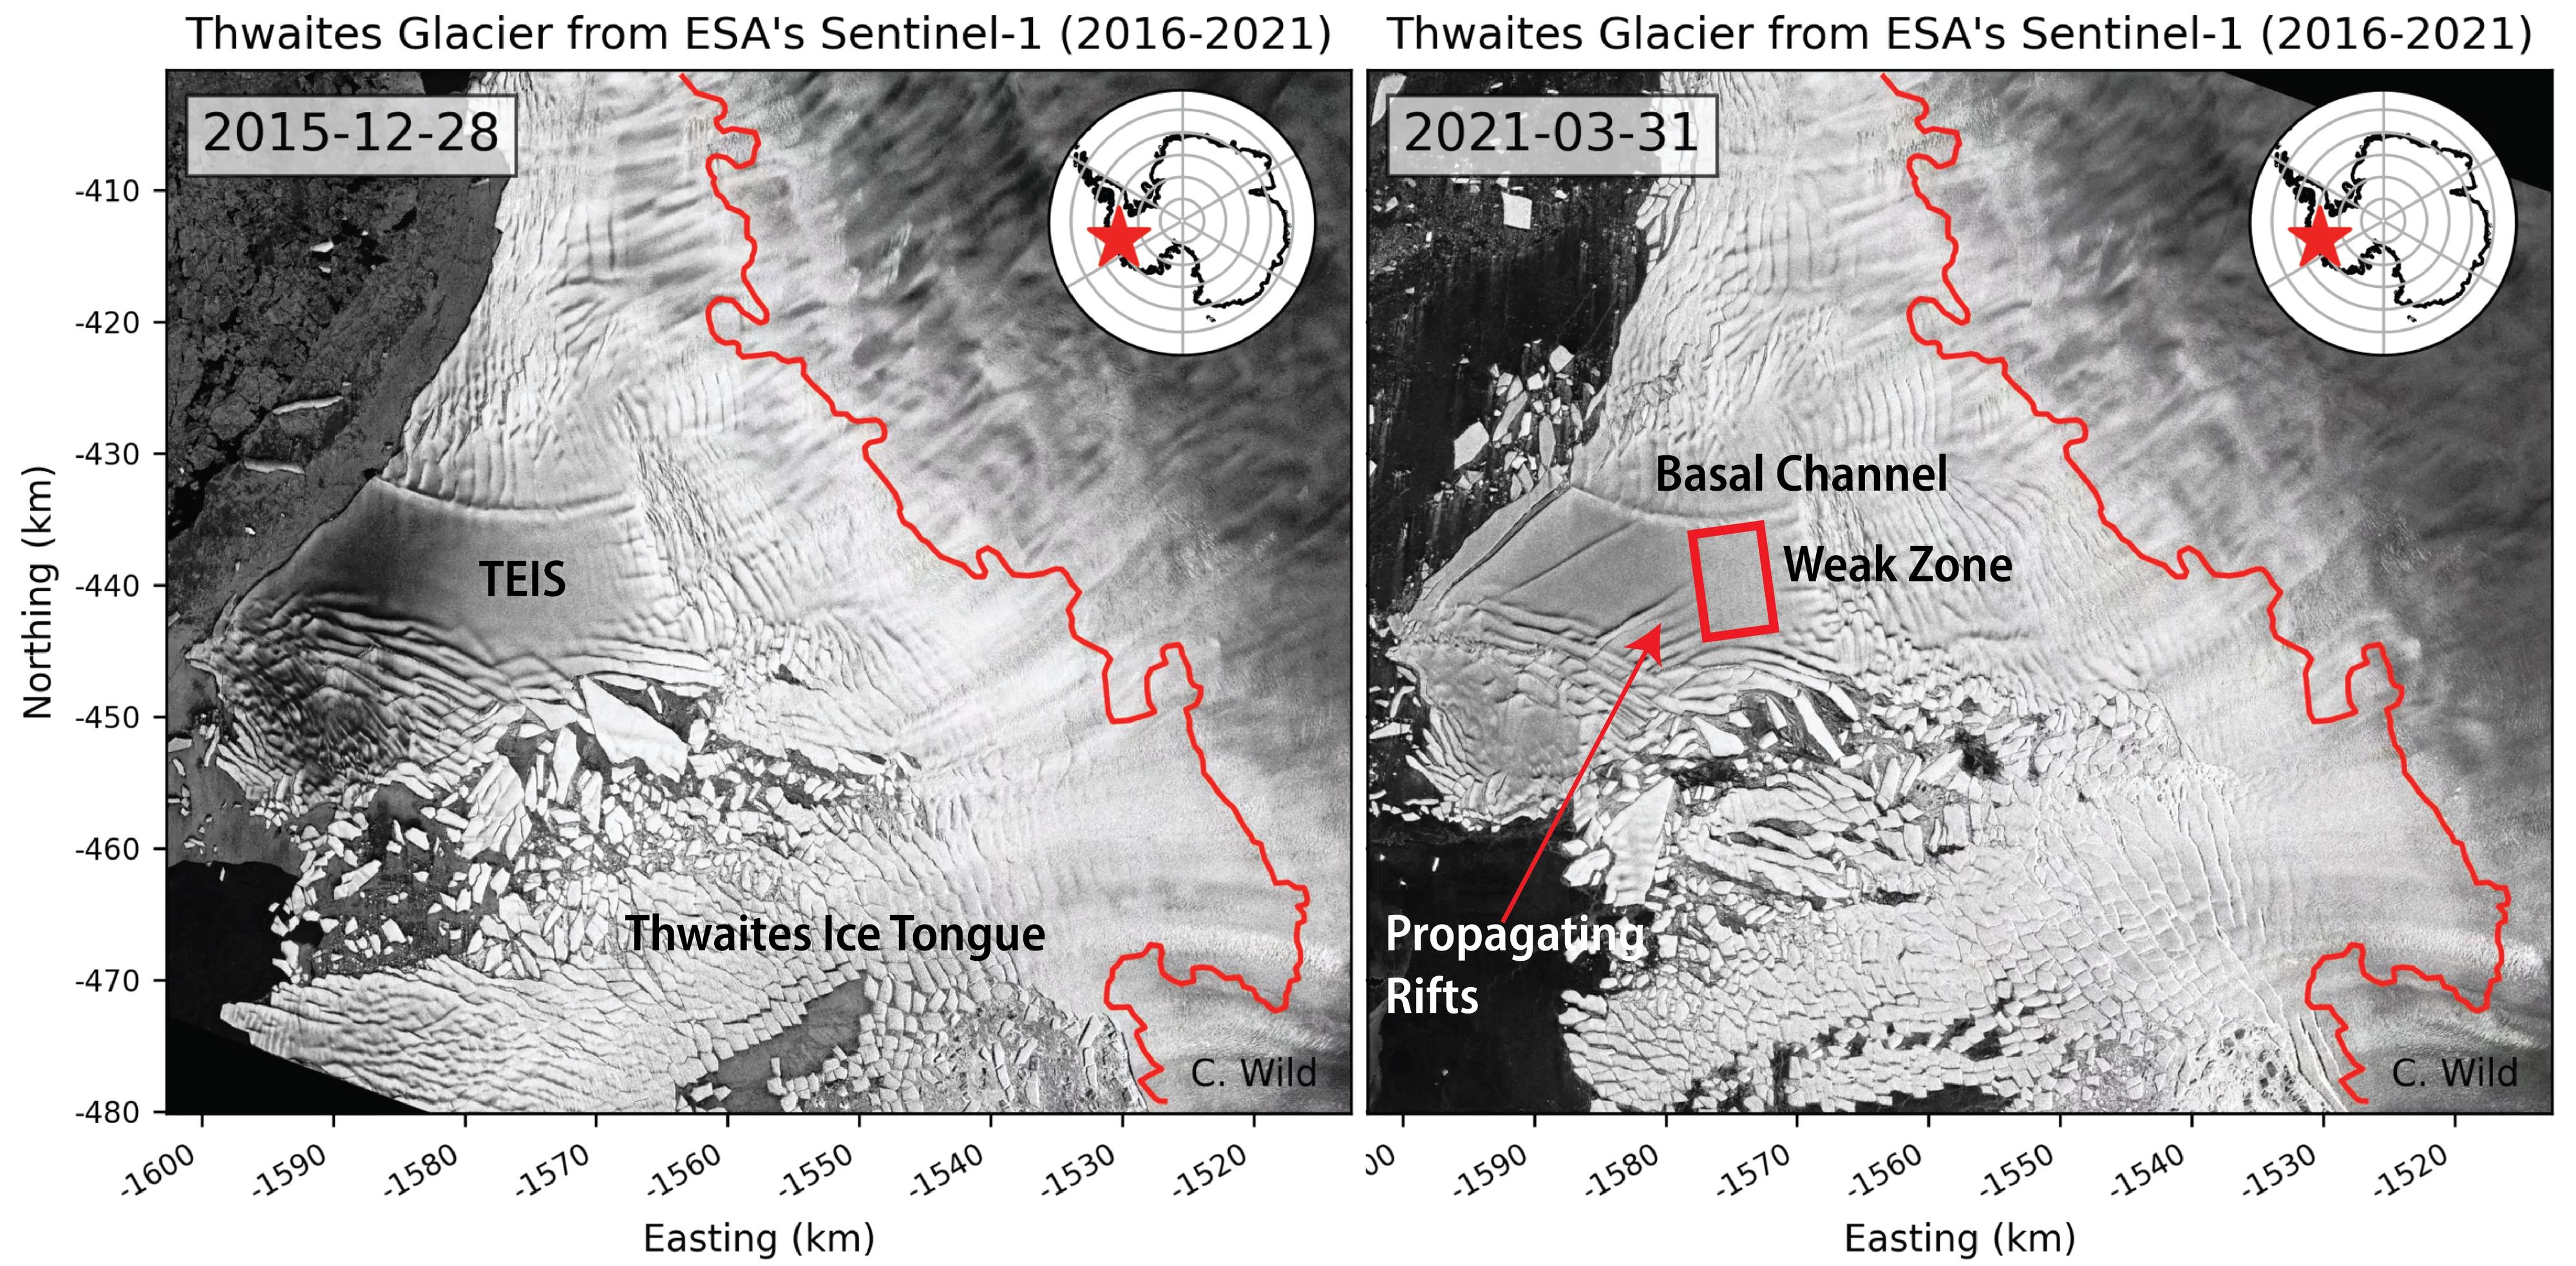 La plateforme de glace orientale de Thwaites (TEIS), sa zone fragile (weak zone), et sa langue de glace (Ice Tongue), les 28 décembre 2015 (gauche) et 31 mars 2021. La TEIS soutient un tiers du glacier de Thwaites. Son enlèvement pourrait augmenter la contribution du glacier Thwaites à l'élévation du niveau de la mer jusqu'à 25%. [Sentinel-1/ESA - Erin C. Pettit, Oregon State University]